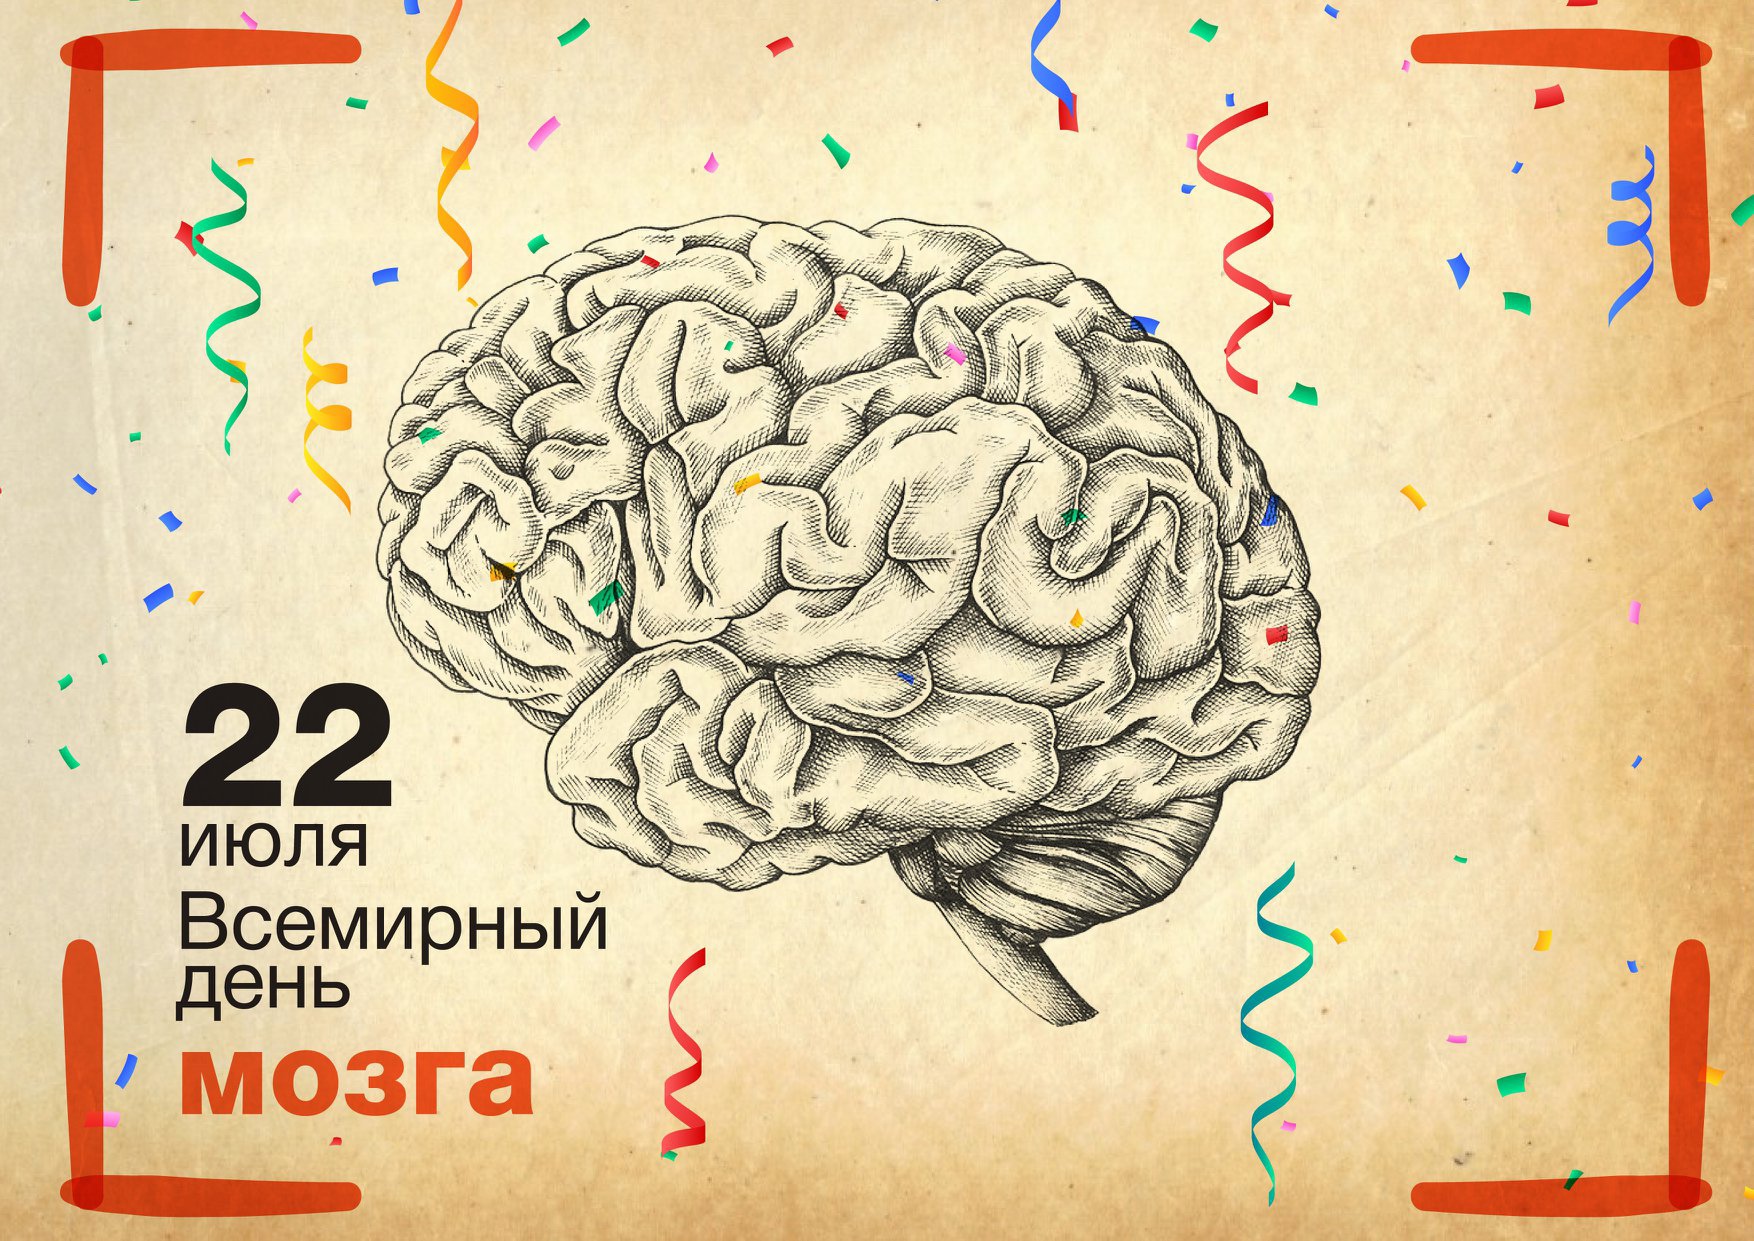 22 июля Всемирный день мозга